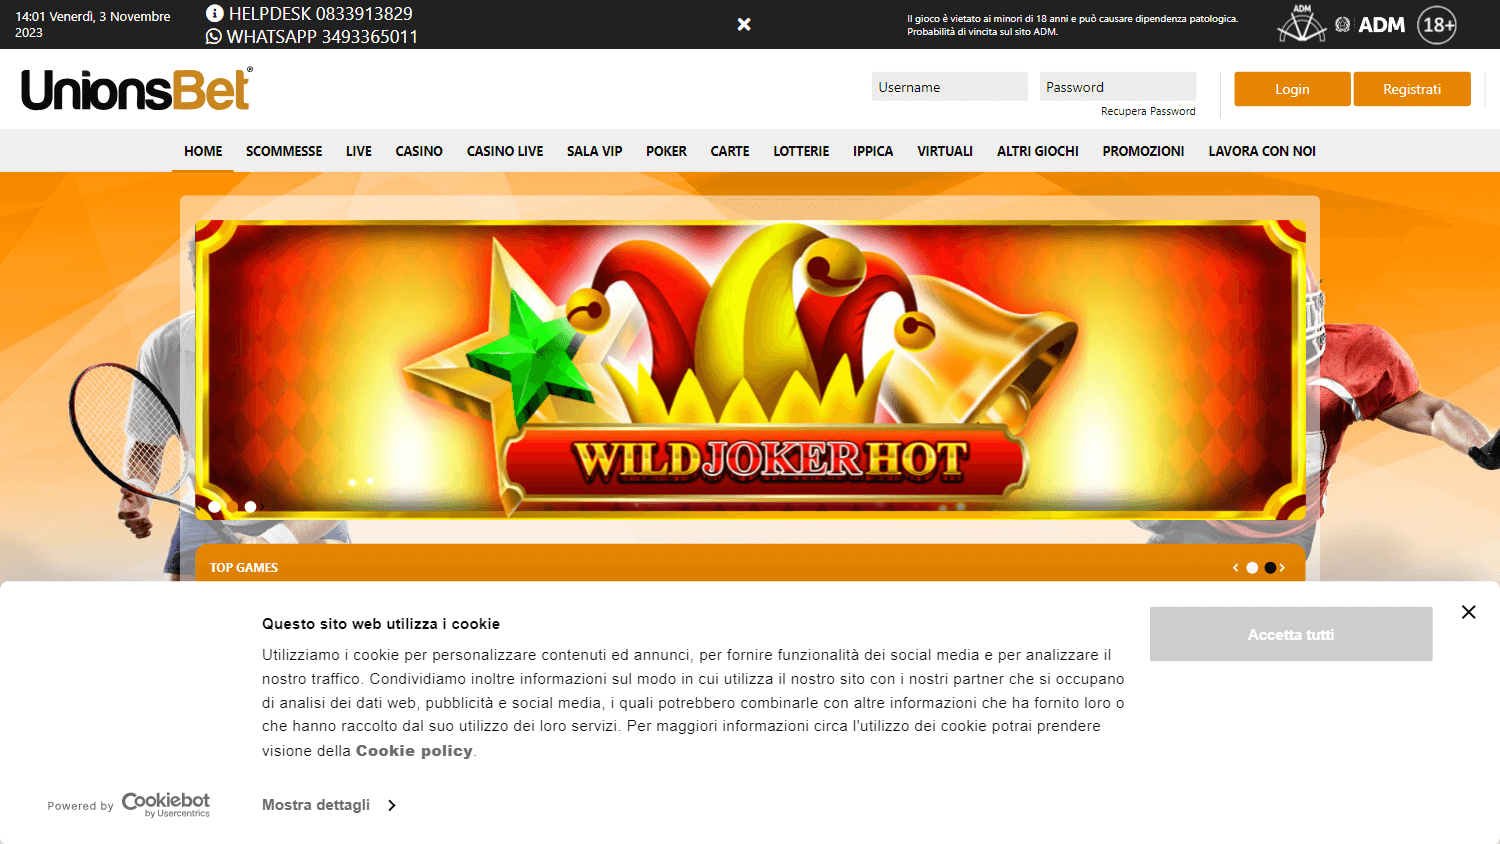 unionsbet_casino_homepage_desktop